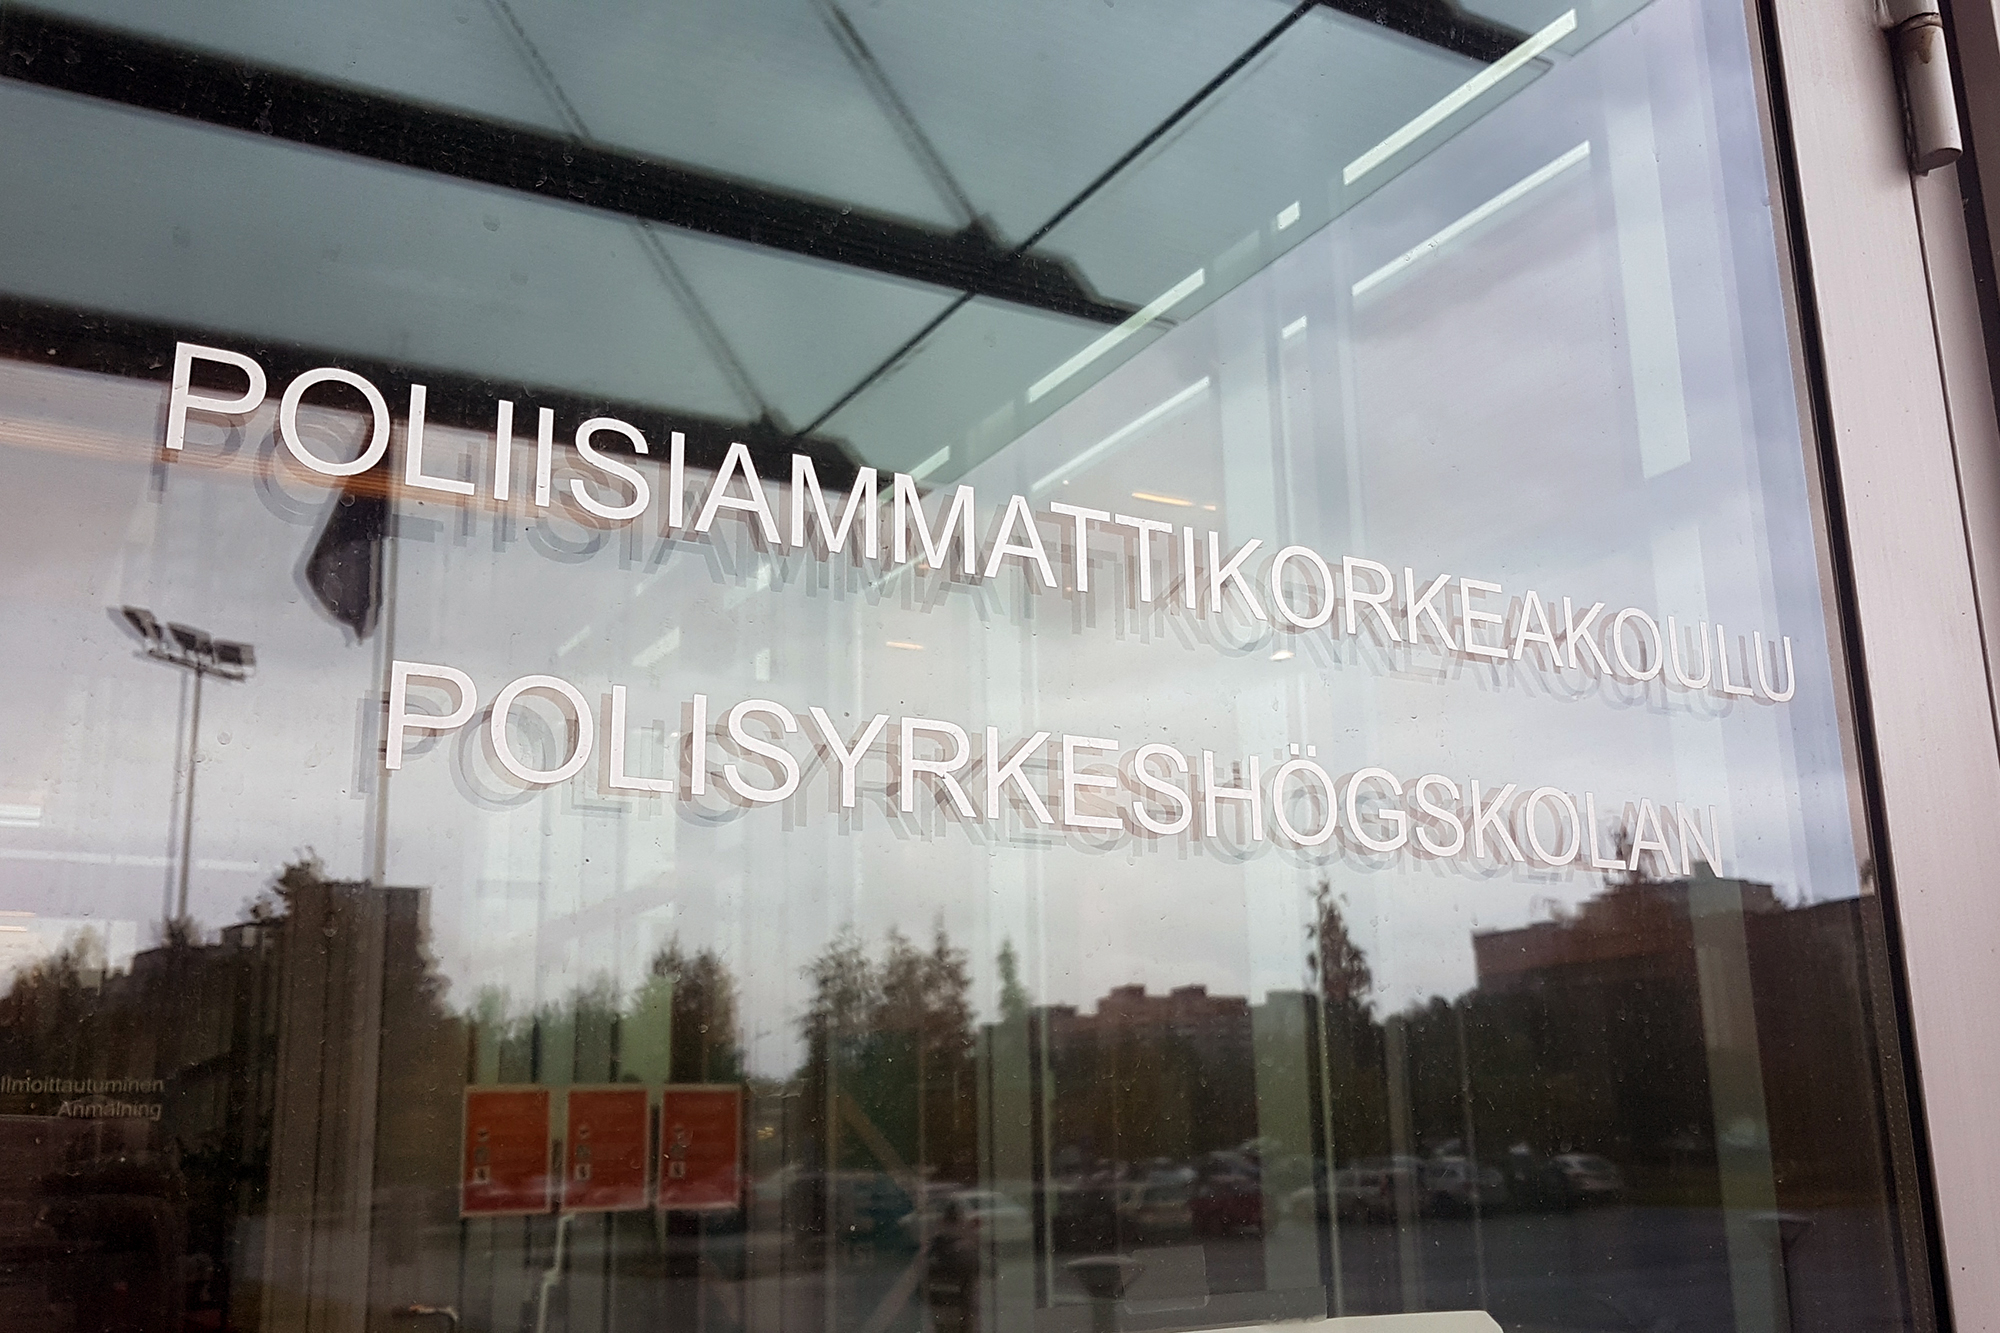 Polisyrkeshögskolans entrédörr av glas med texten Poliisiammattikorkeakoulu Polisyrkeshögskolan.